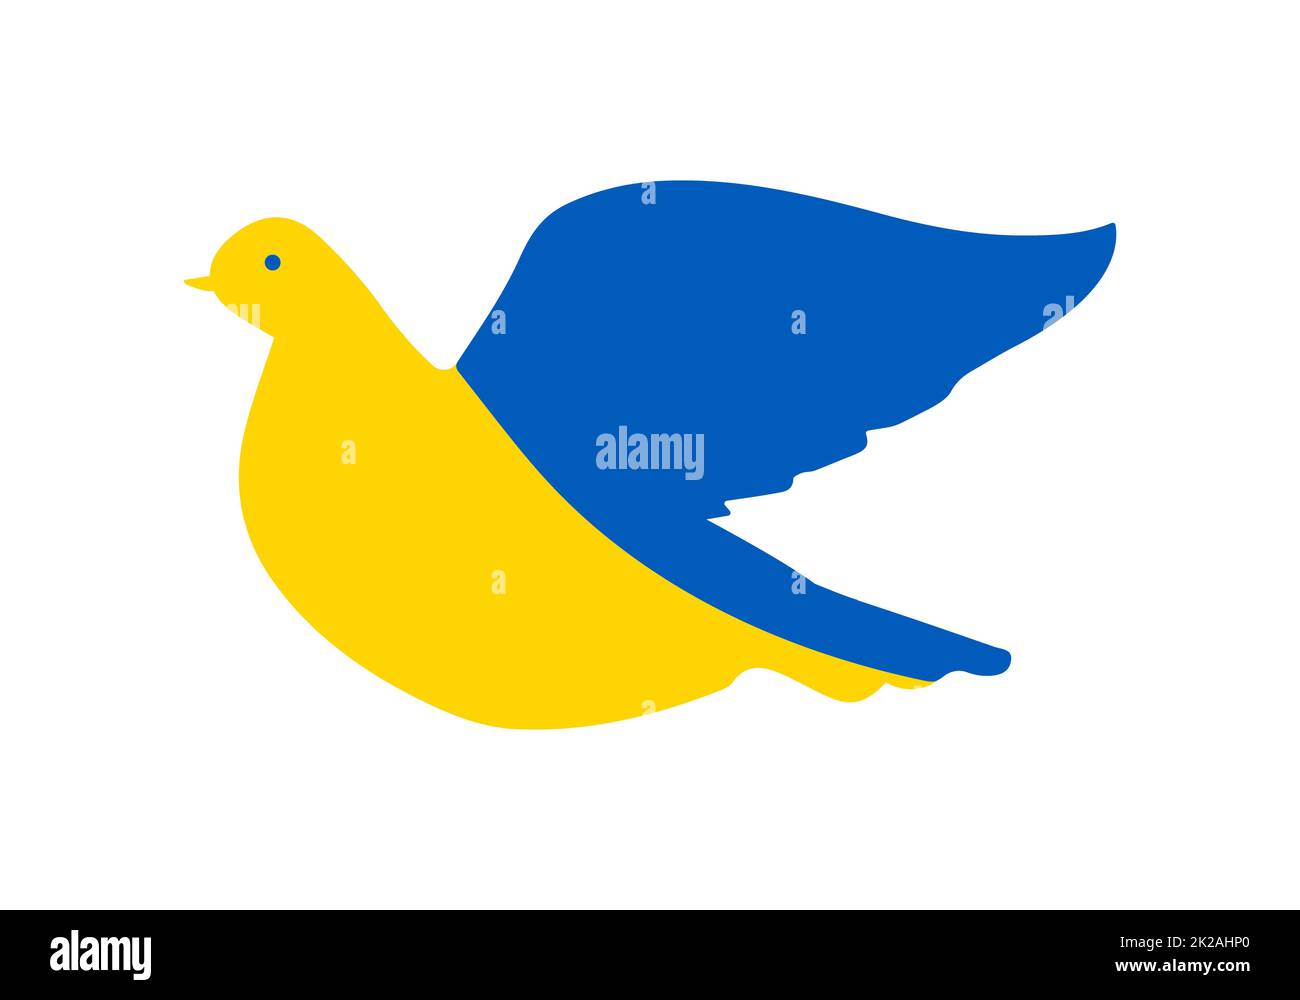 Colomba volante simboleggia il libero paese Ucraina. Il concetto è un uccello svolazzante dipinto nei colori della bandiera nazionale Ucraina. Simbolo di indipendenza. Illustrazione vettoriale su sfondo bianco. Foto Stock